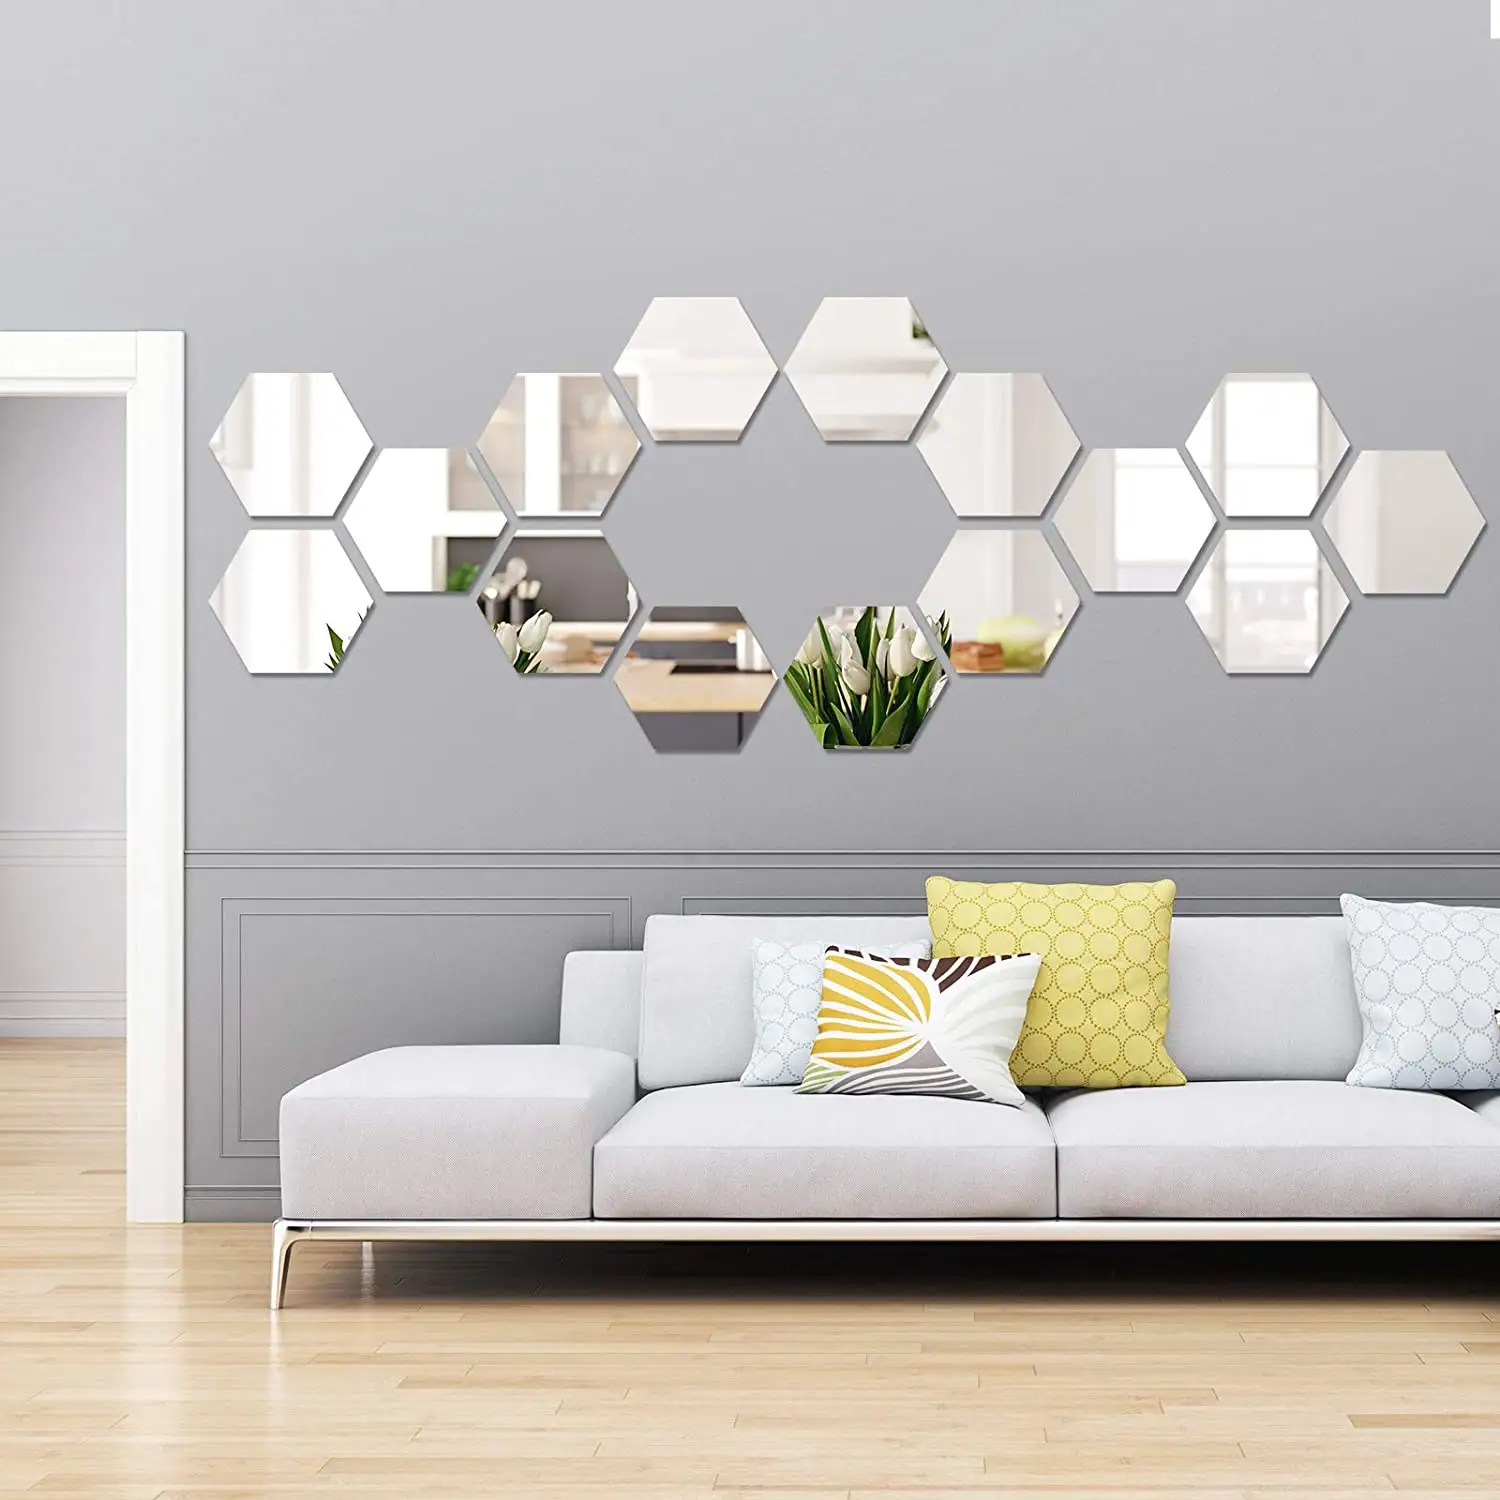 Hexagon Shape Mirror Wall Sticker 3D Art Acrylic Mirror Wall Decor Decal Hexagones Mirror For Home Decoration